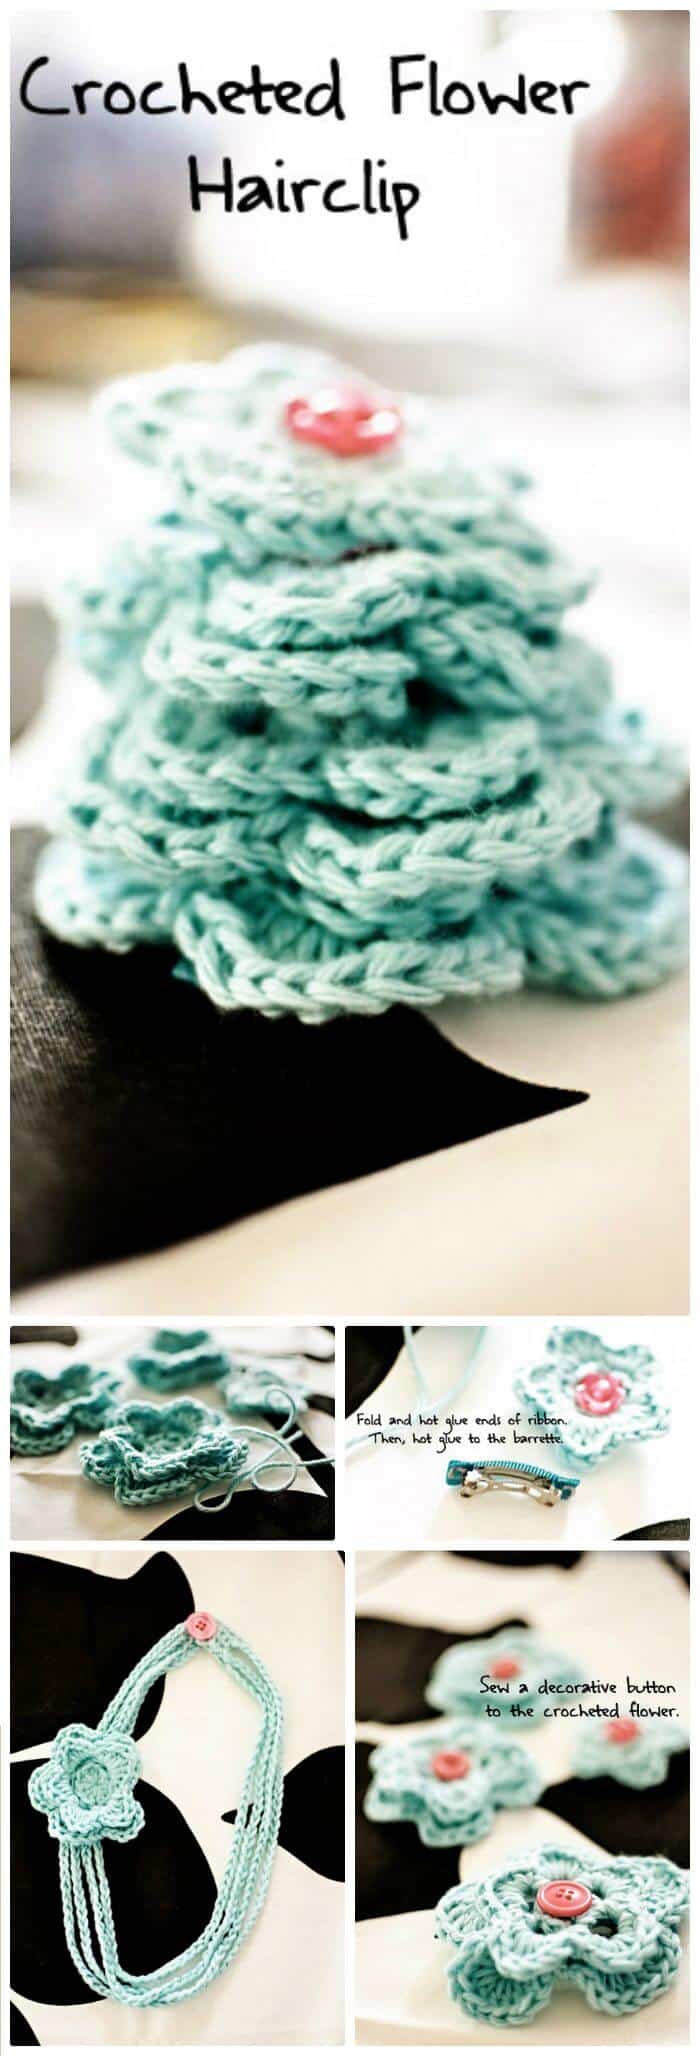 DIY Crochet Flower Hairclip, tutoriales sencillos de flores de ganchillo paso a paso.  Patrones de flores de ganchillo fáciles!